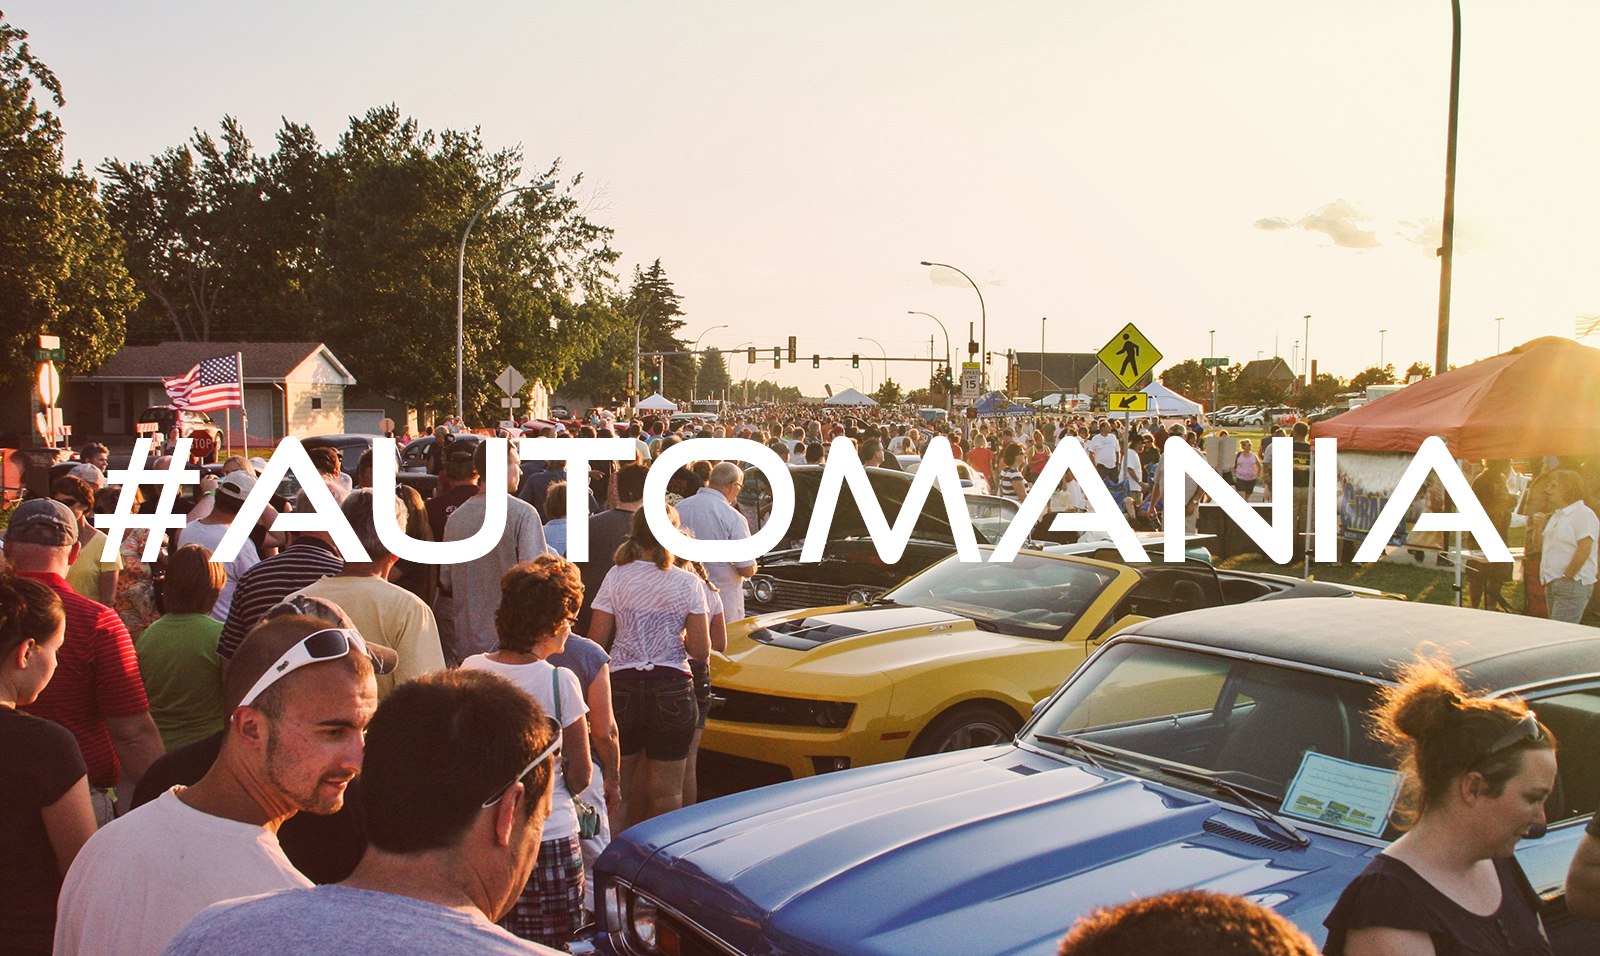 #Automania 2014